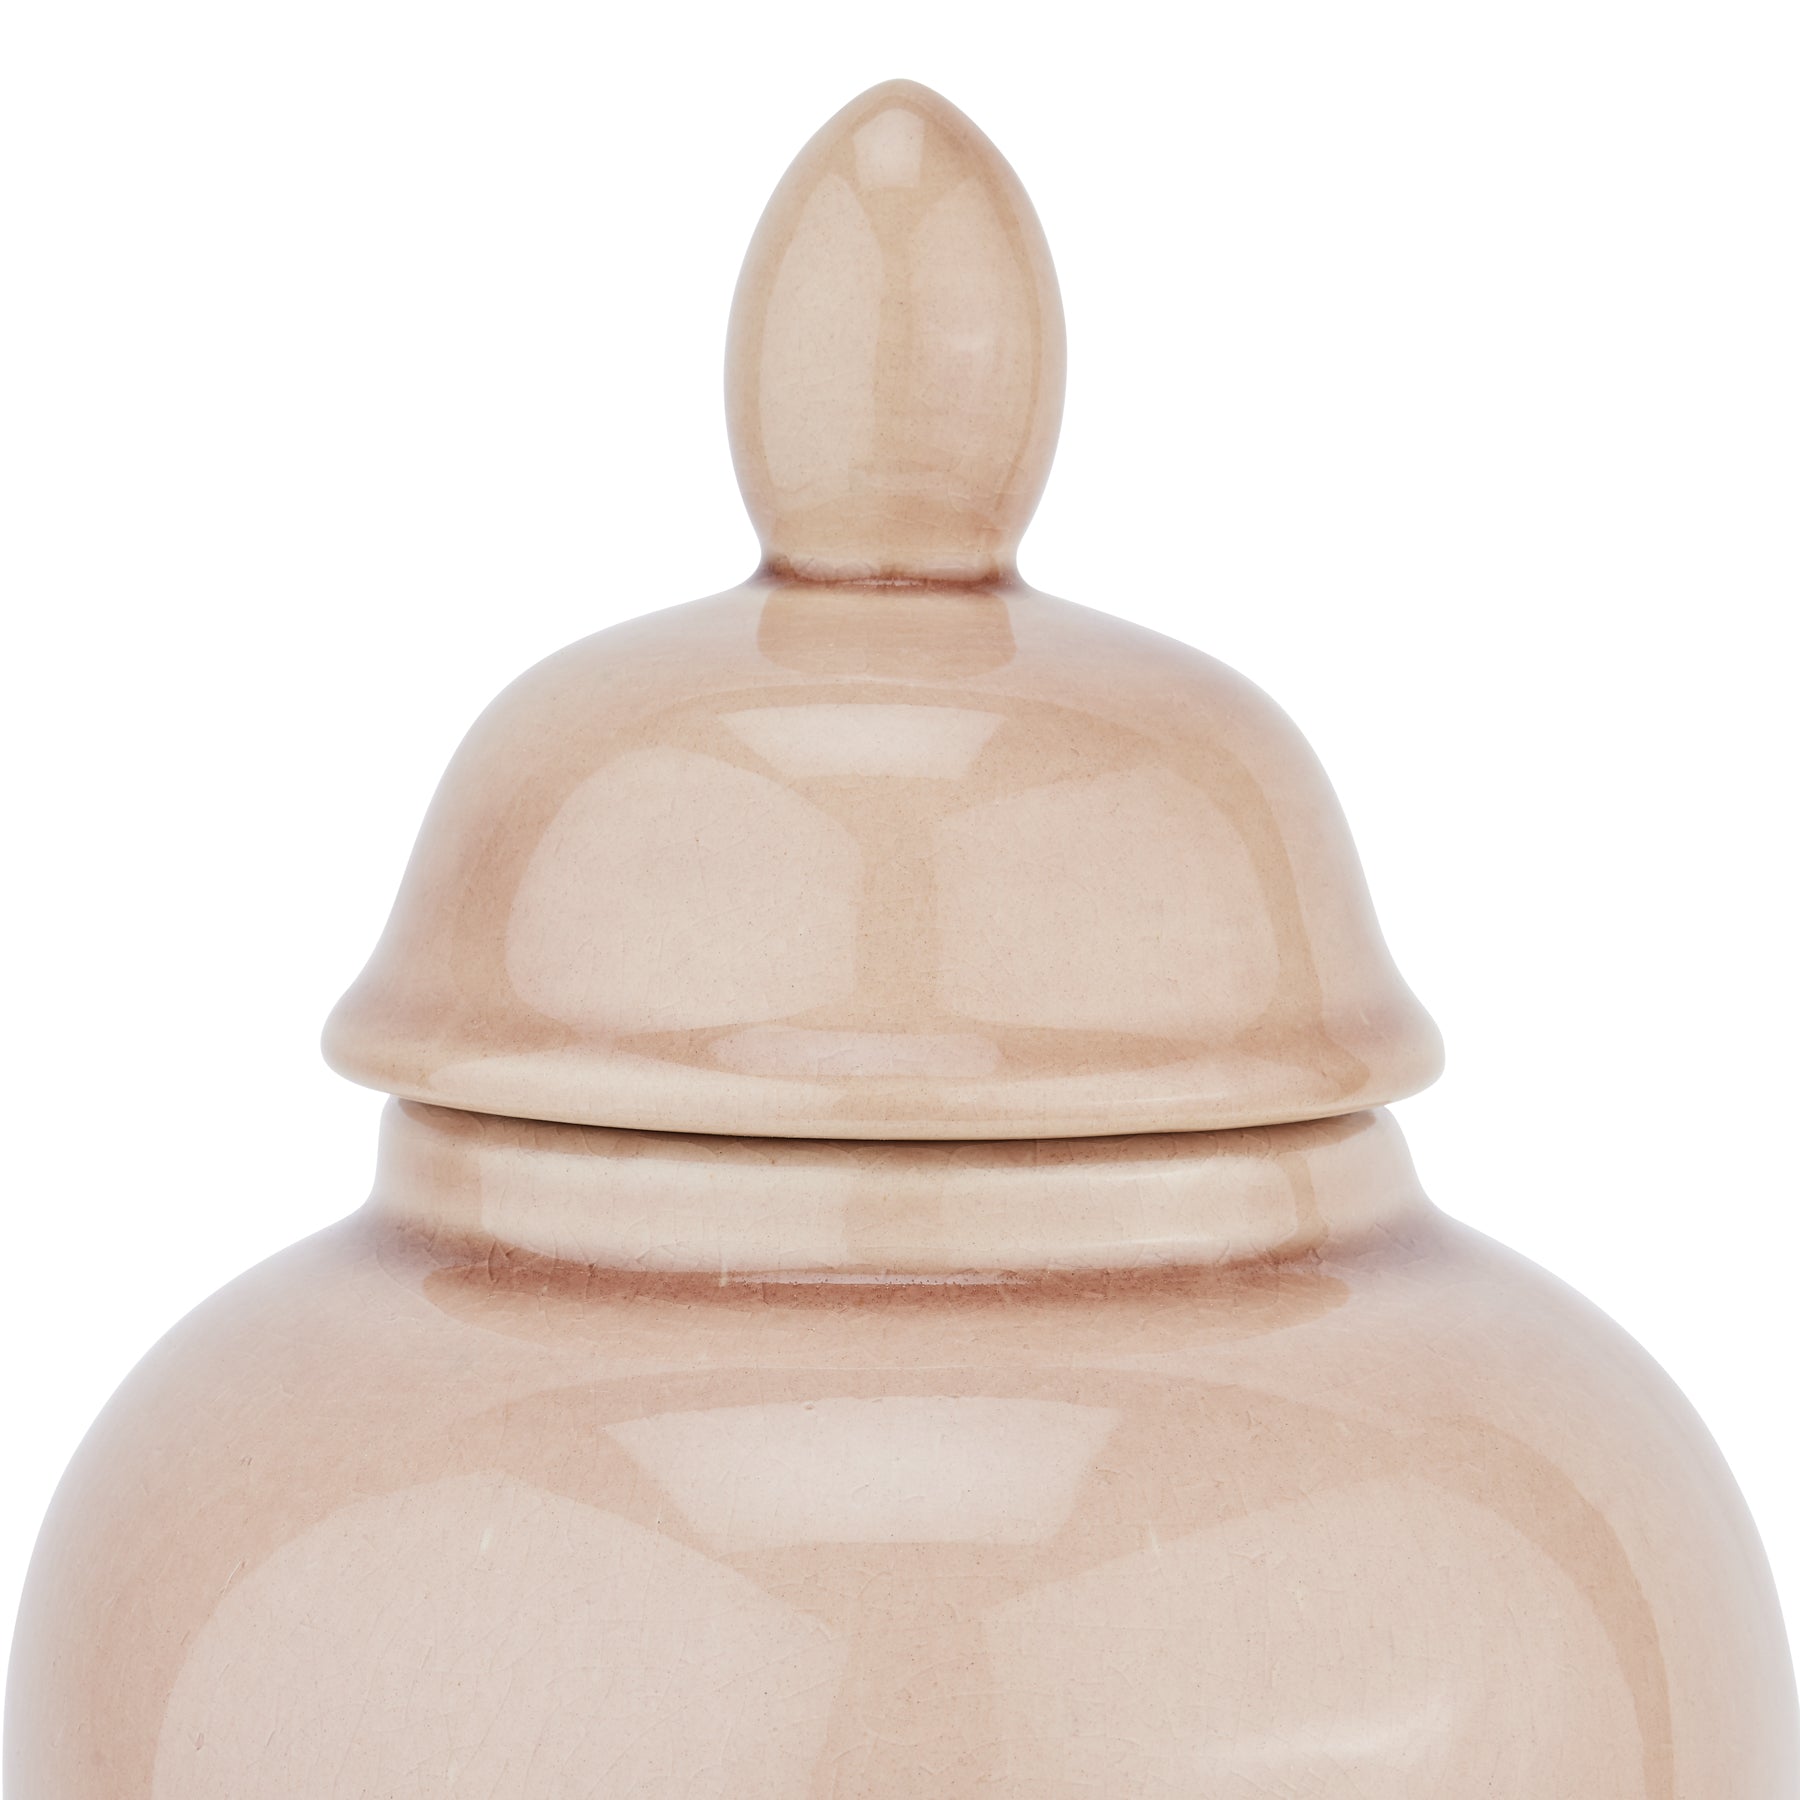 Seville Collection Blush Ginger Jar